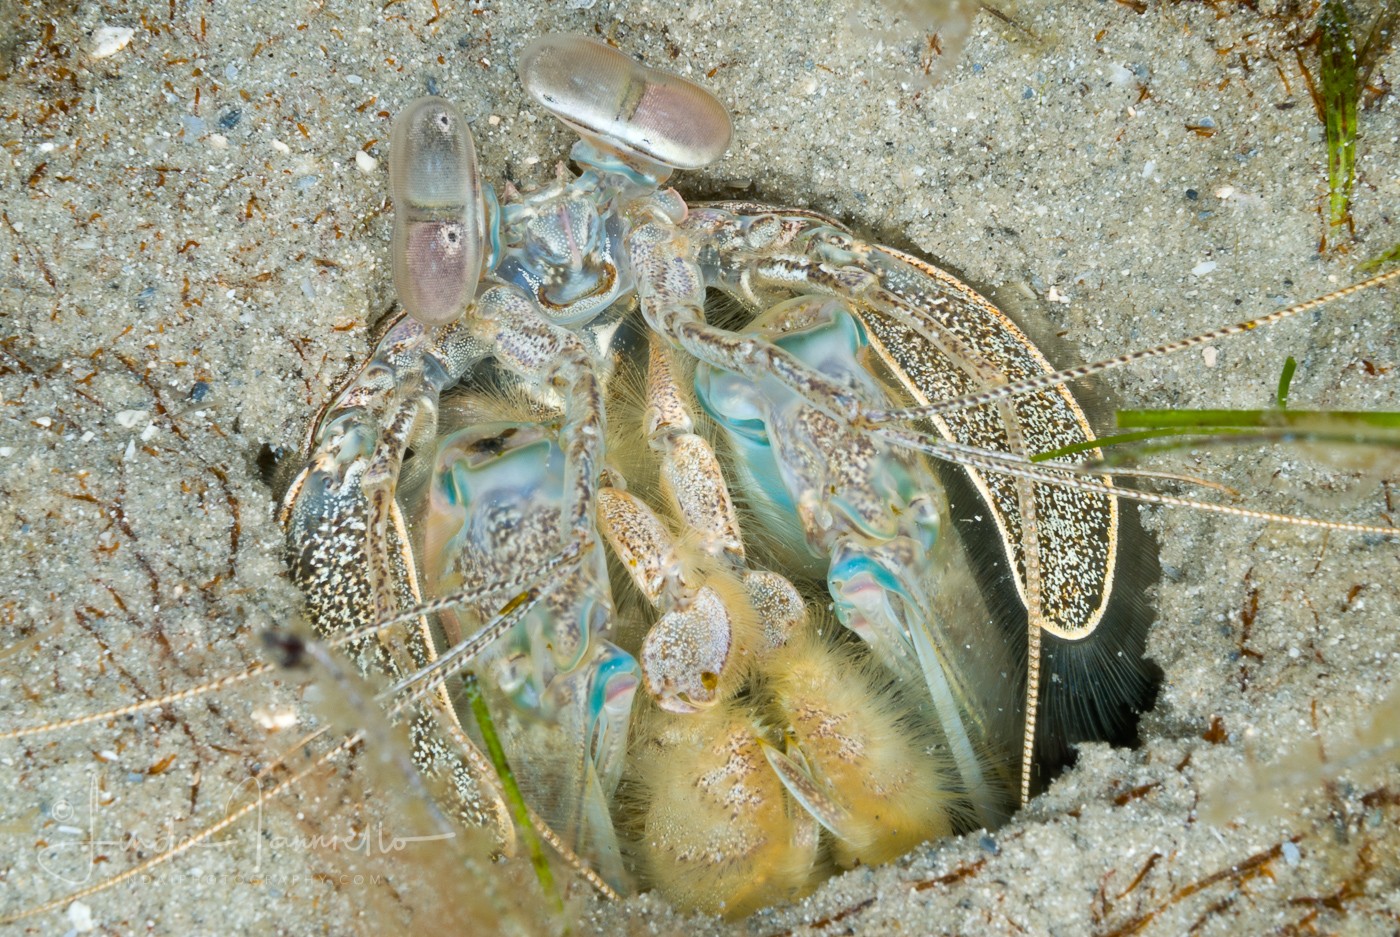 Scaly-tailed Mantis Shrimp - Lysiosquilla scabricauda (unusual blue color)